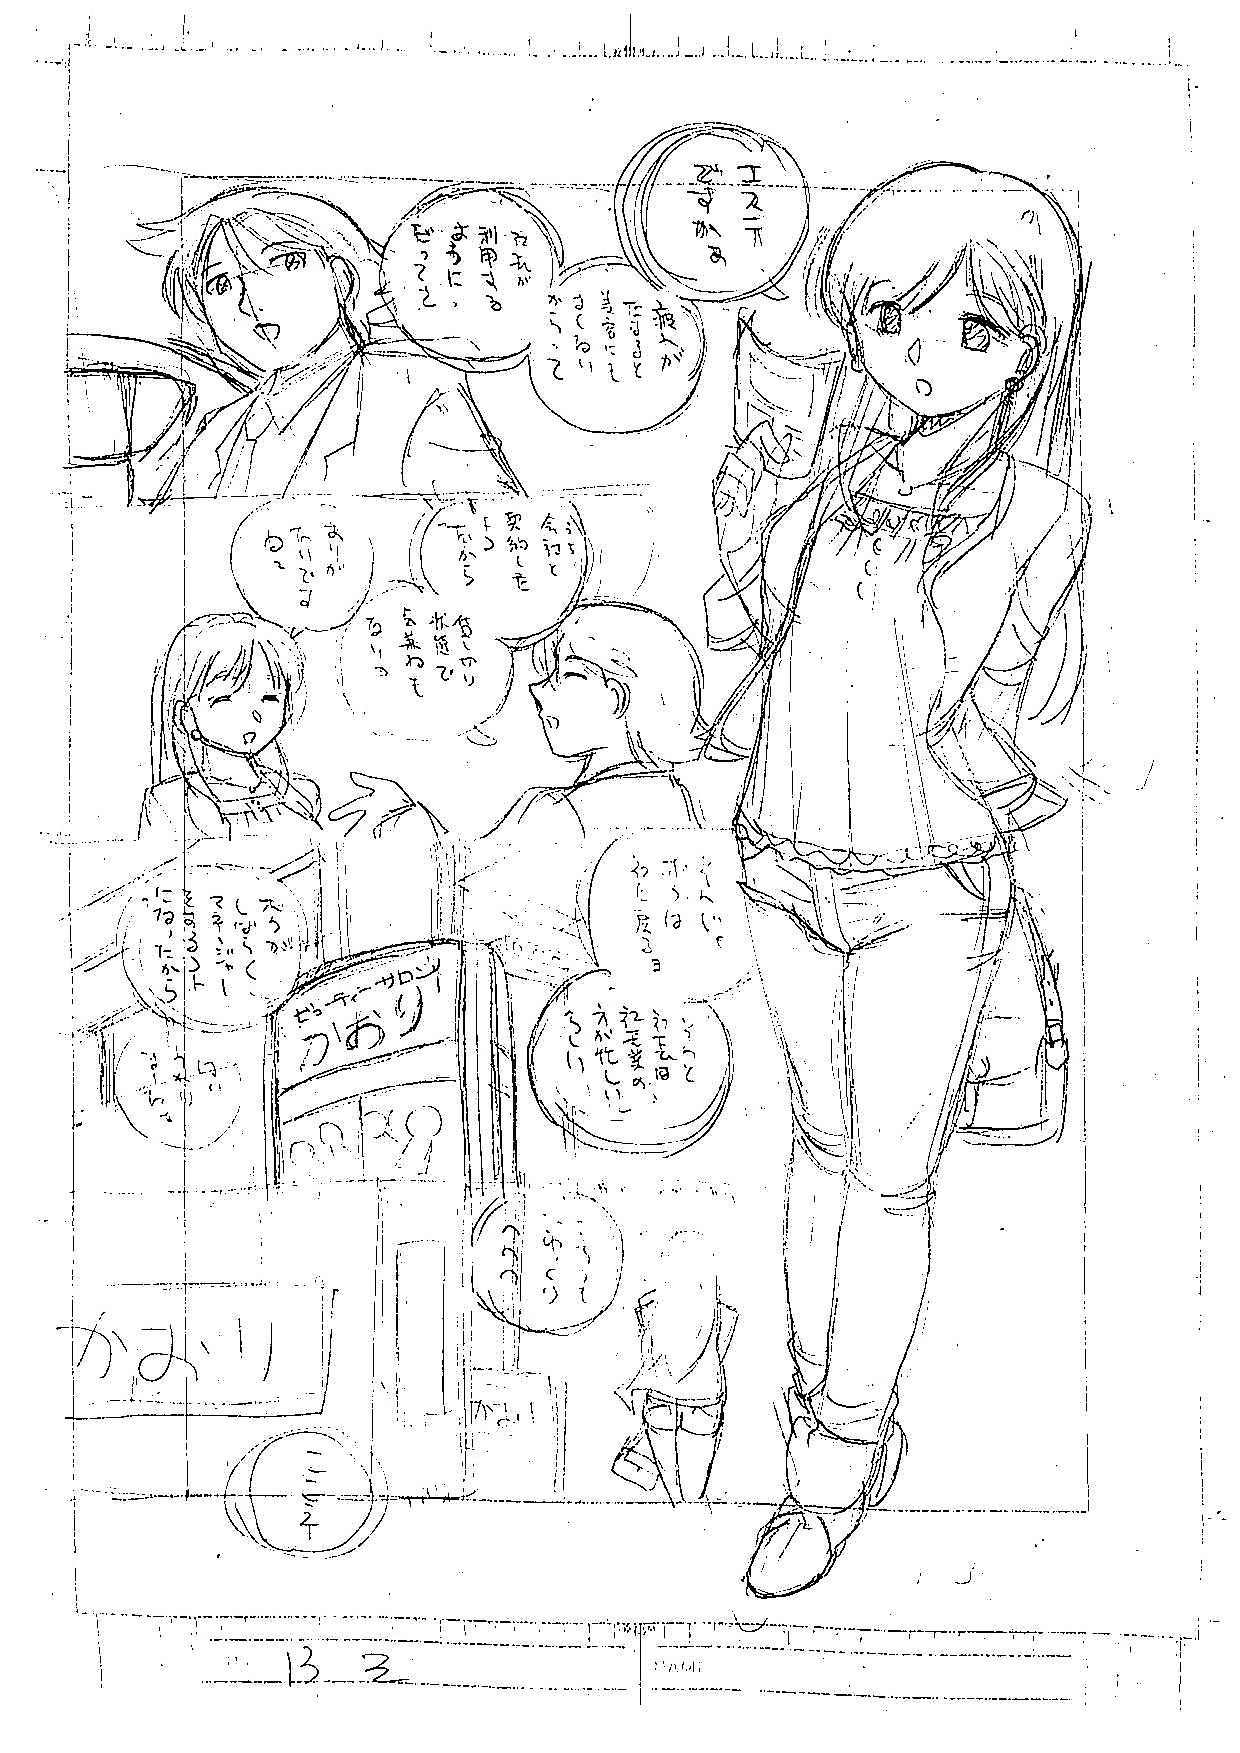 ศิลปิน -  naruto - ส่วนหนึ่ง 11 page 1